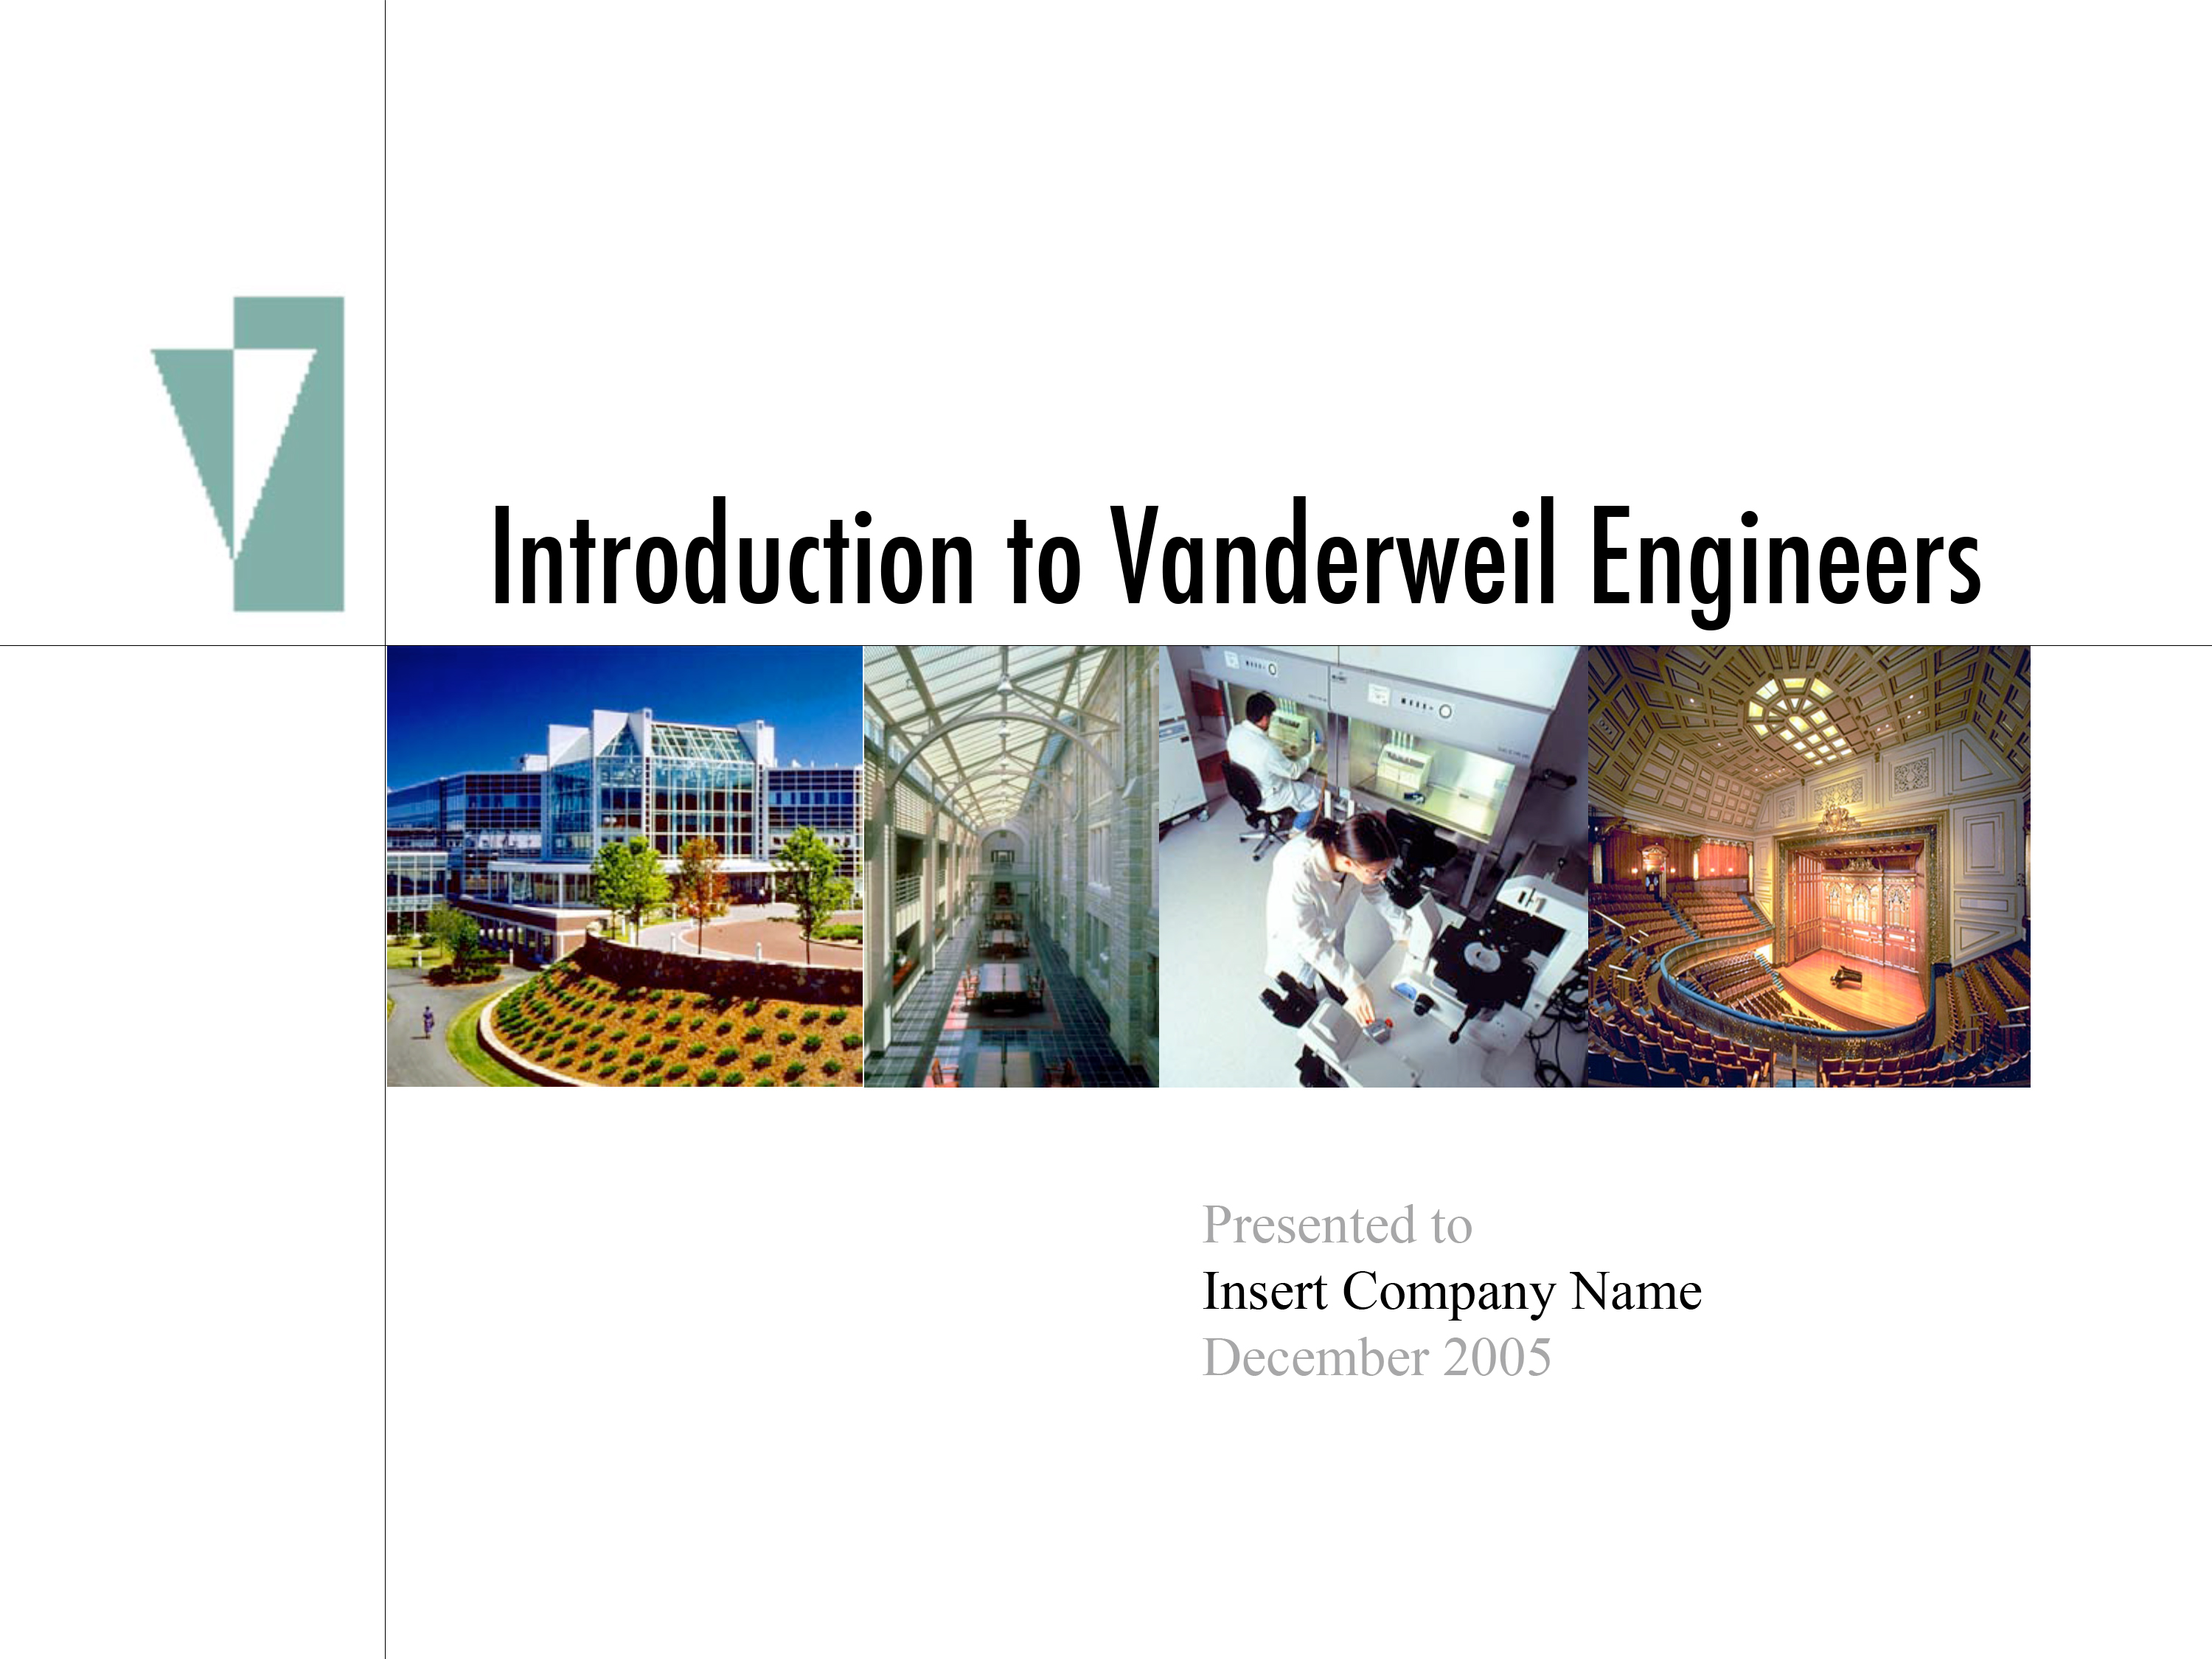 Vanderweil Engineers Office Photos